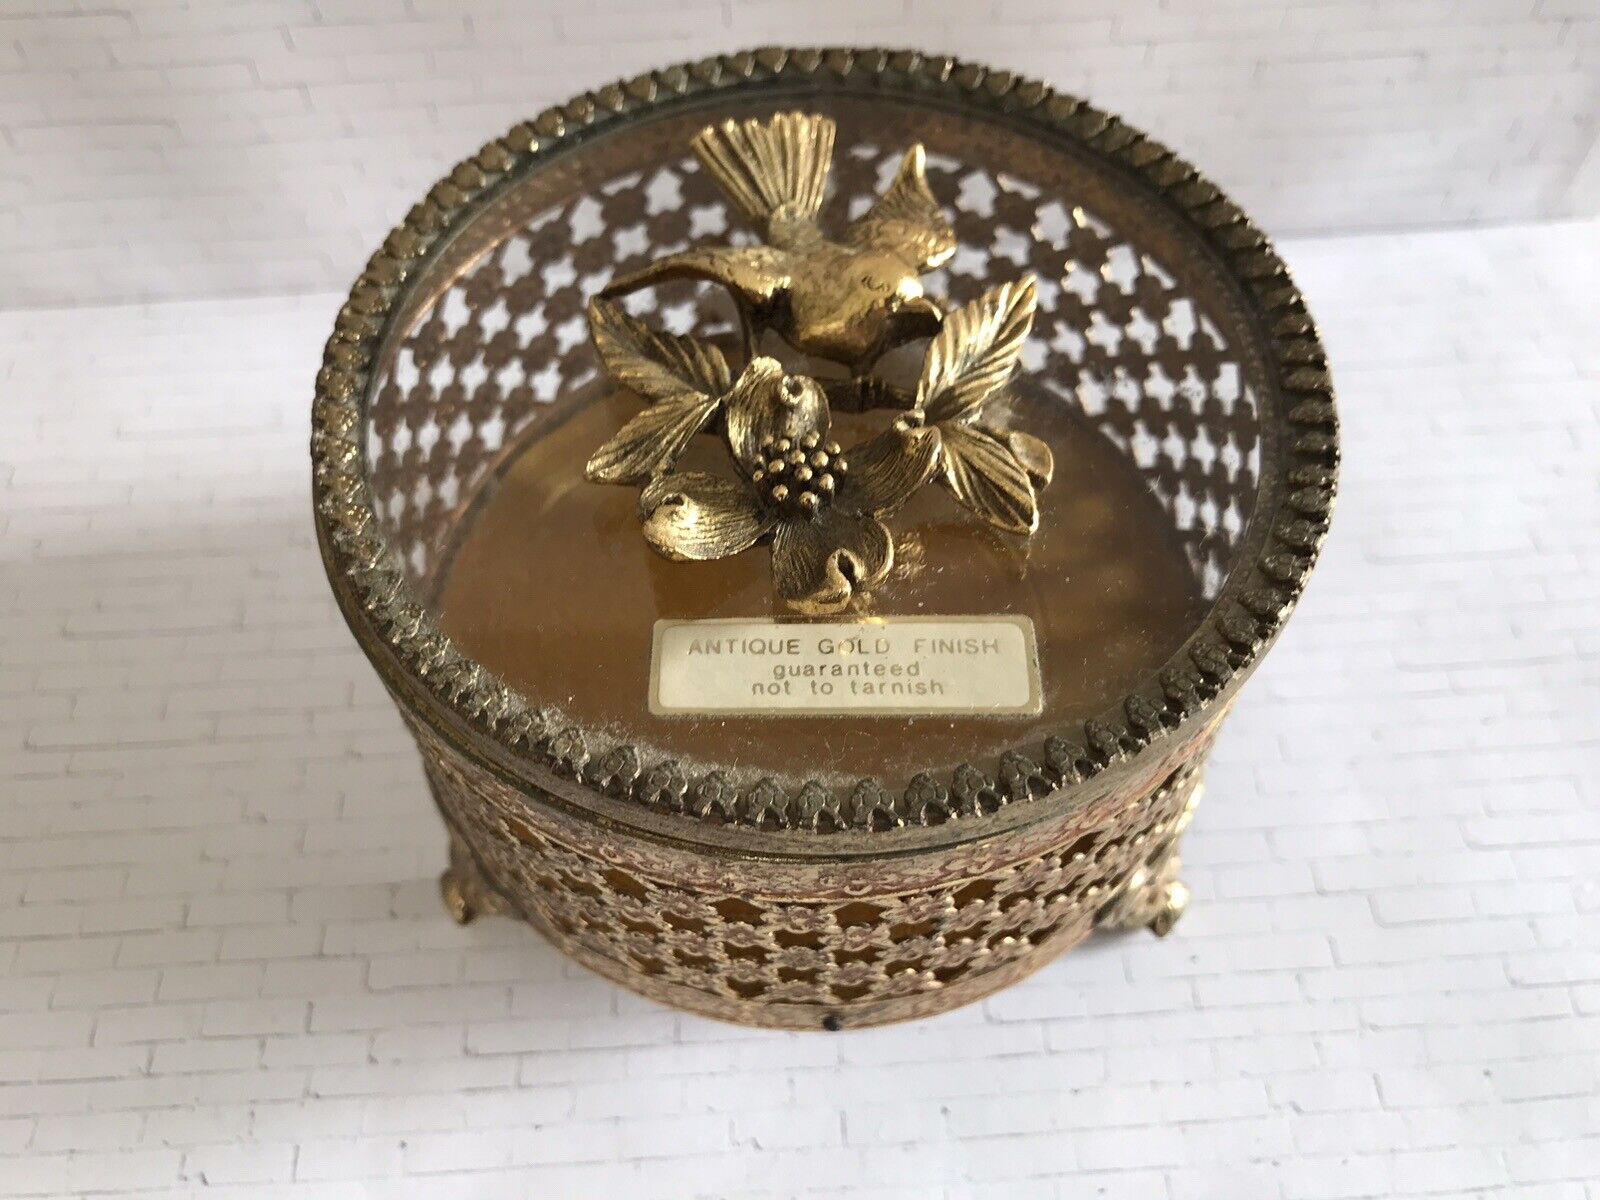 Vintage Ornate Gold Metal & Glass Trinket Box Antique Gold Finish